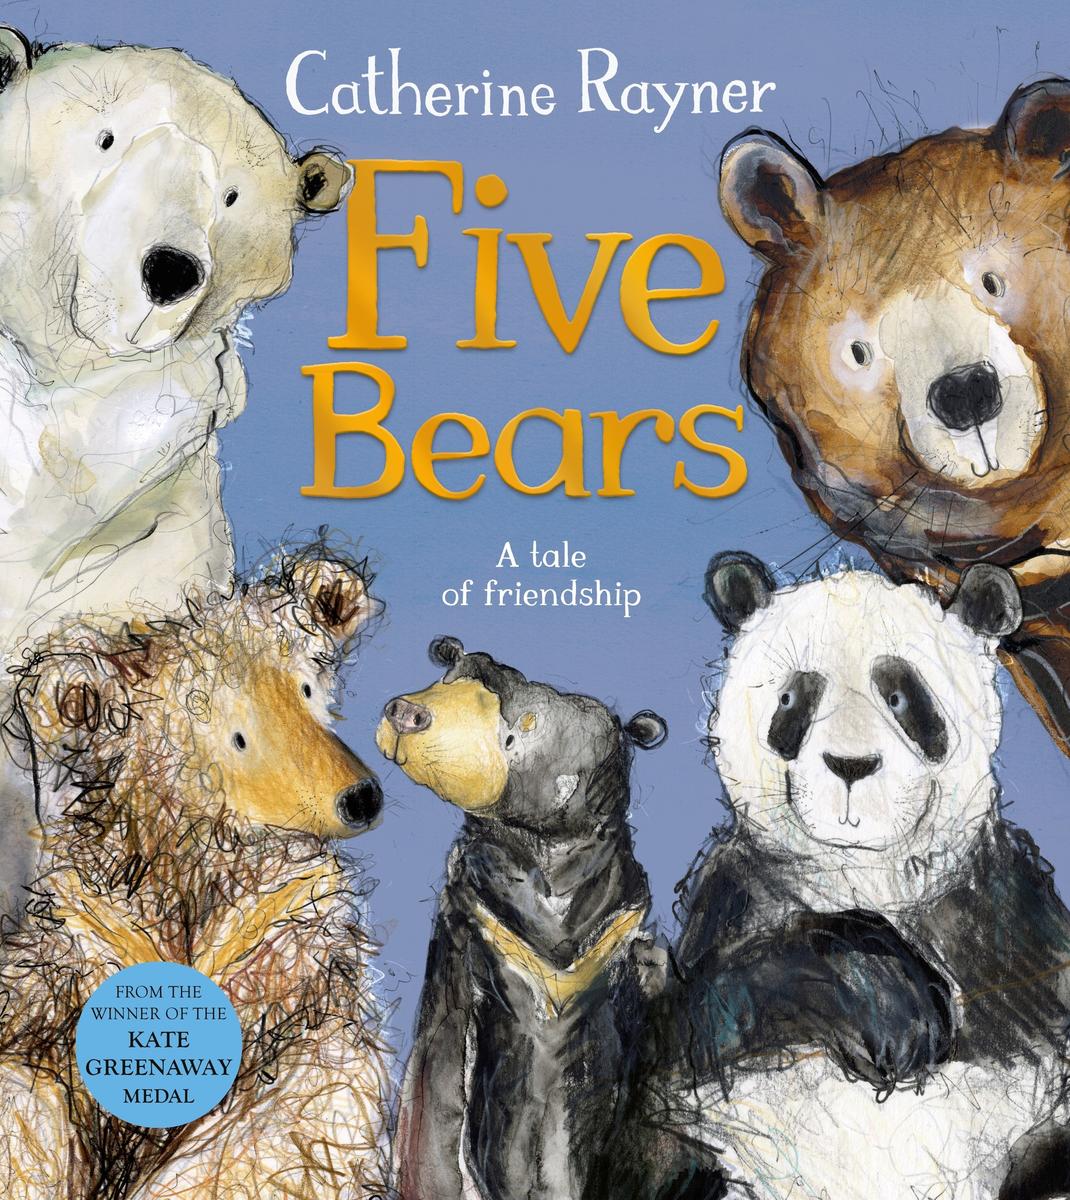 Five Bears - A tale of friendship